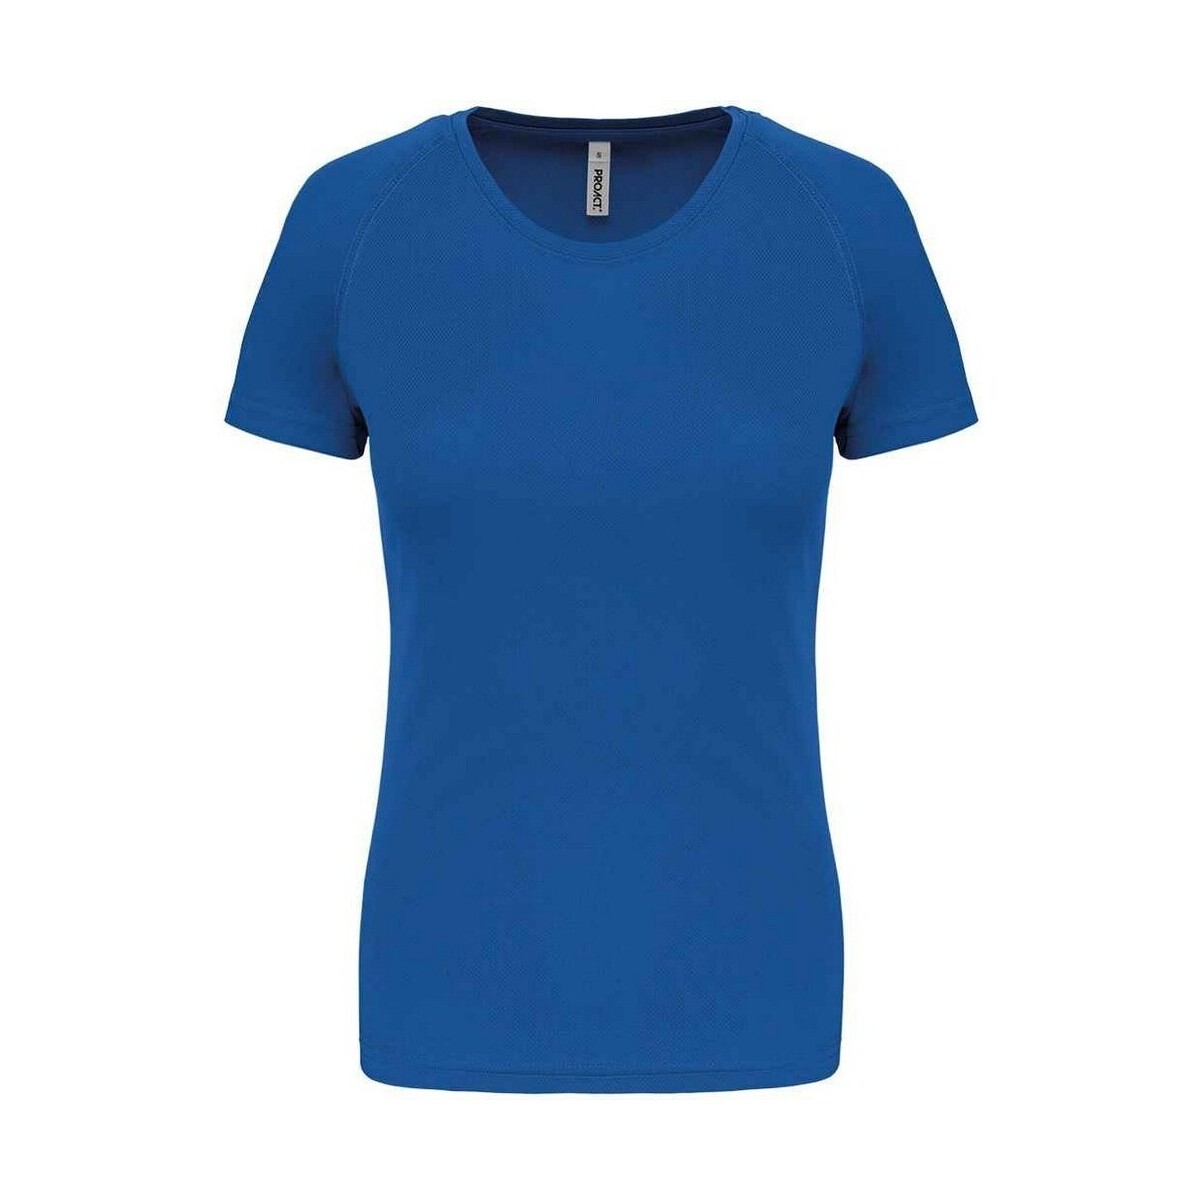 textil Mujer Camisetas manga larga Proact PC6776 Azul